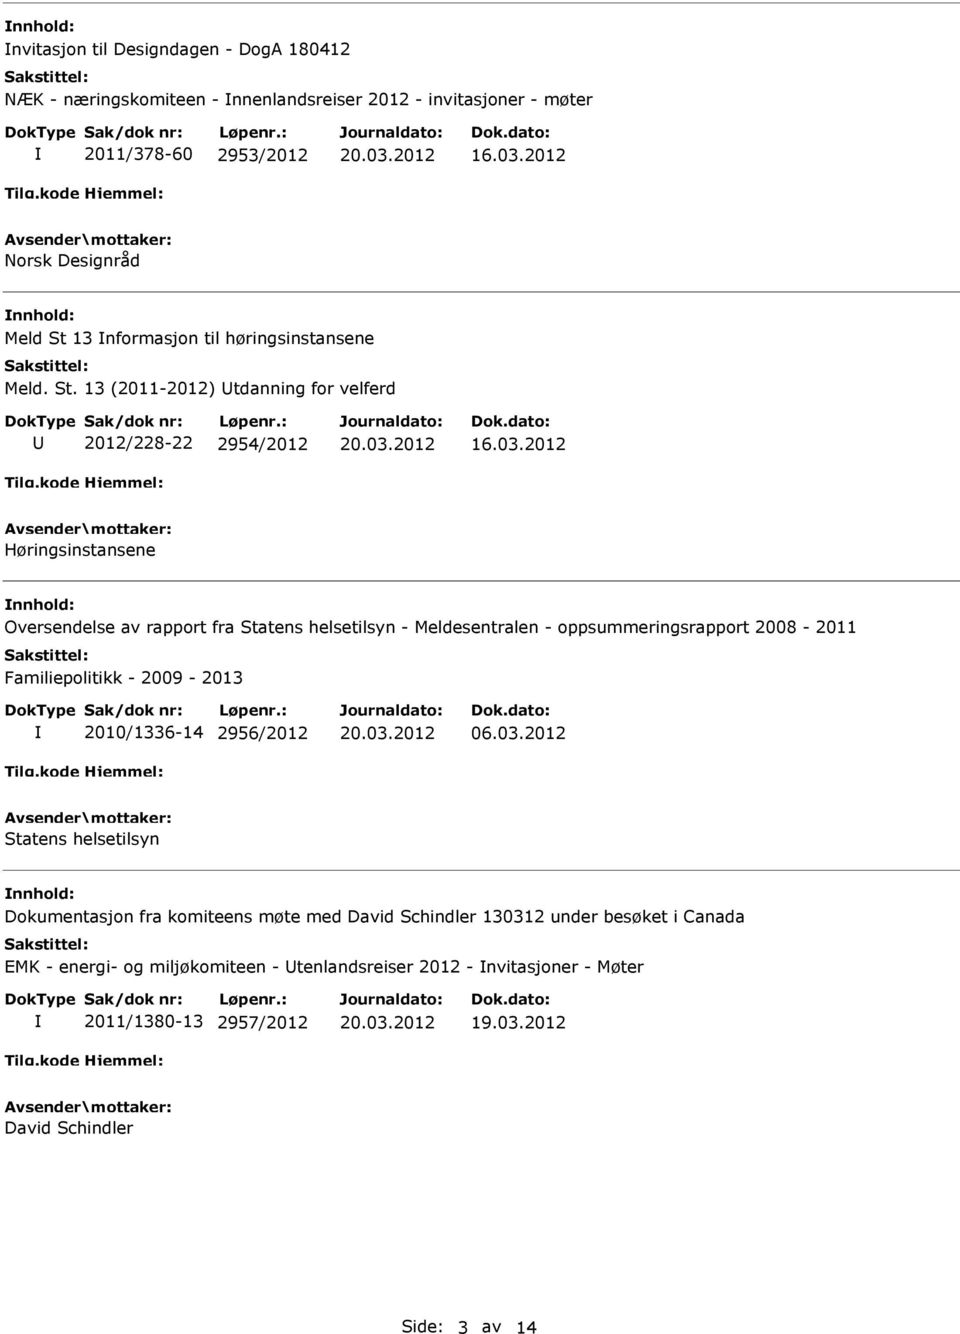 2012 Høringsinstansene Oversendelse av rapport fra Statens helsetilsyn - Meldesentralen - oppsummeringsrapport 2008-2011 Familiepolitikk - 2009-2013 2010/1336-14 2956/2012